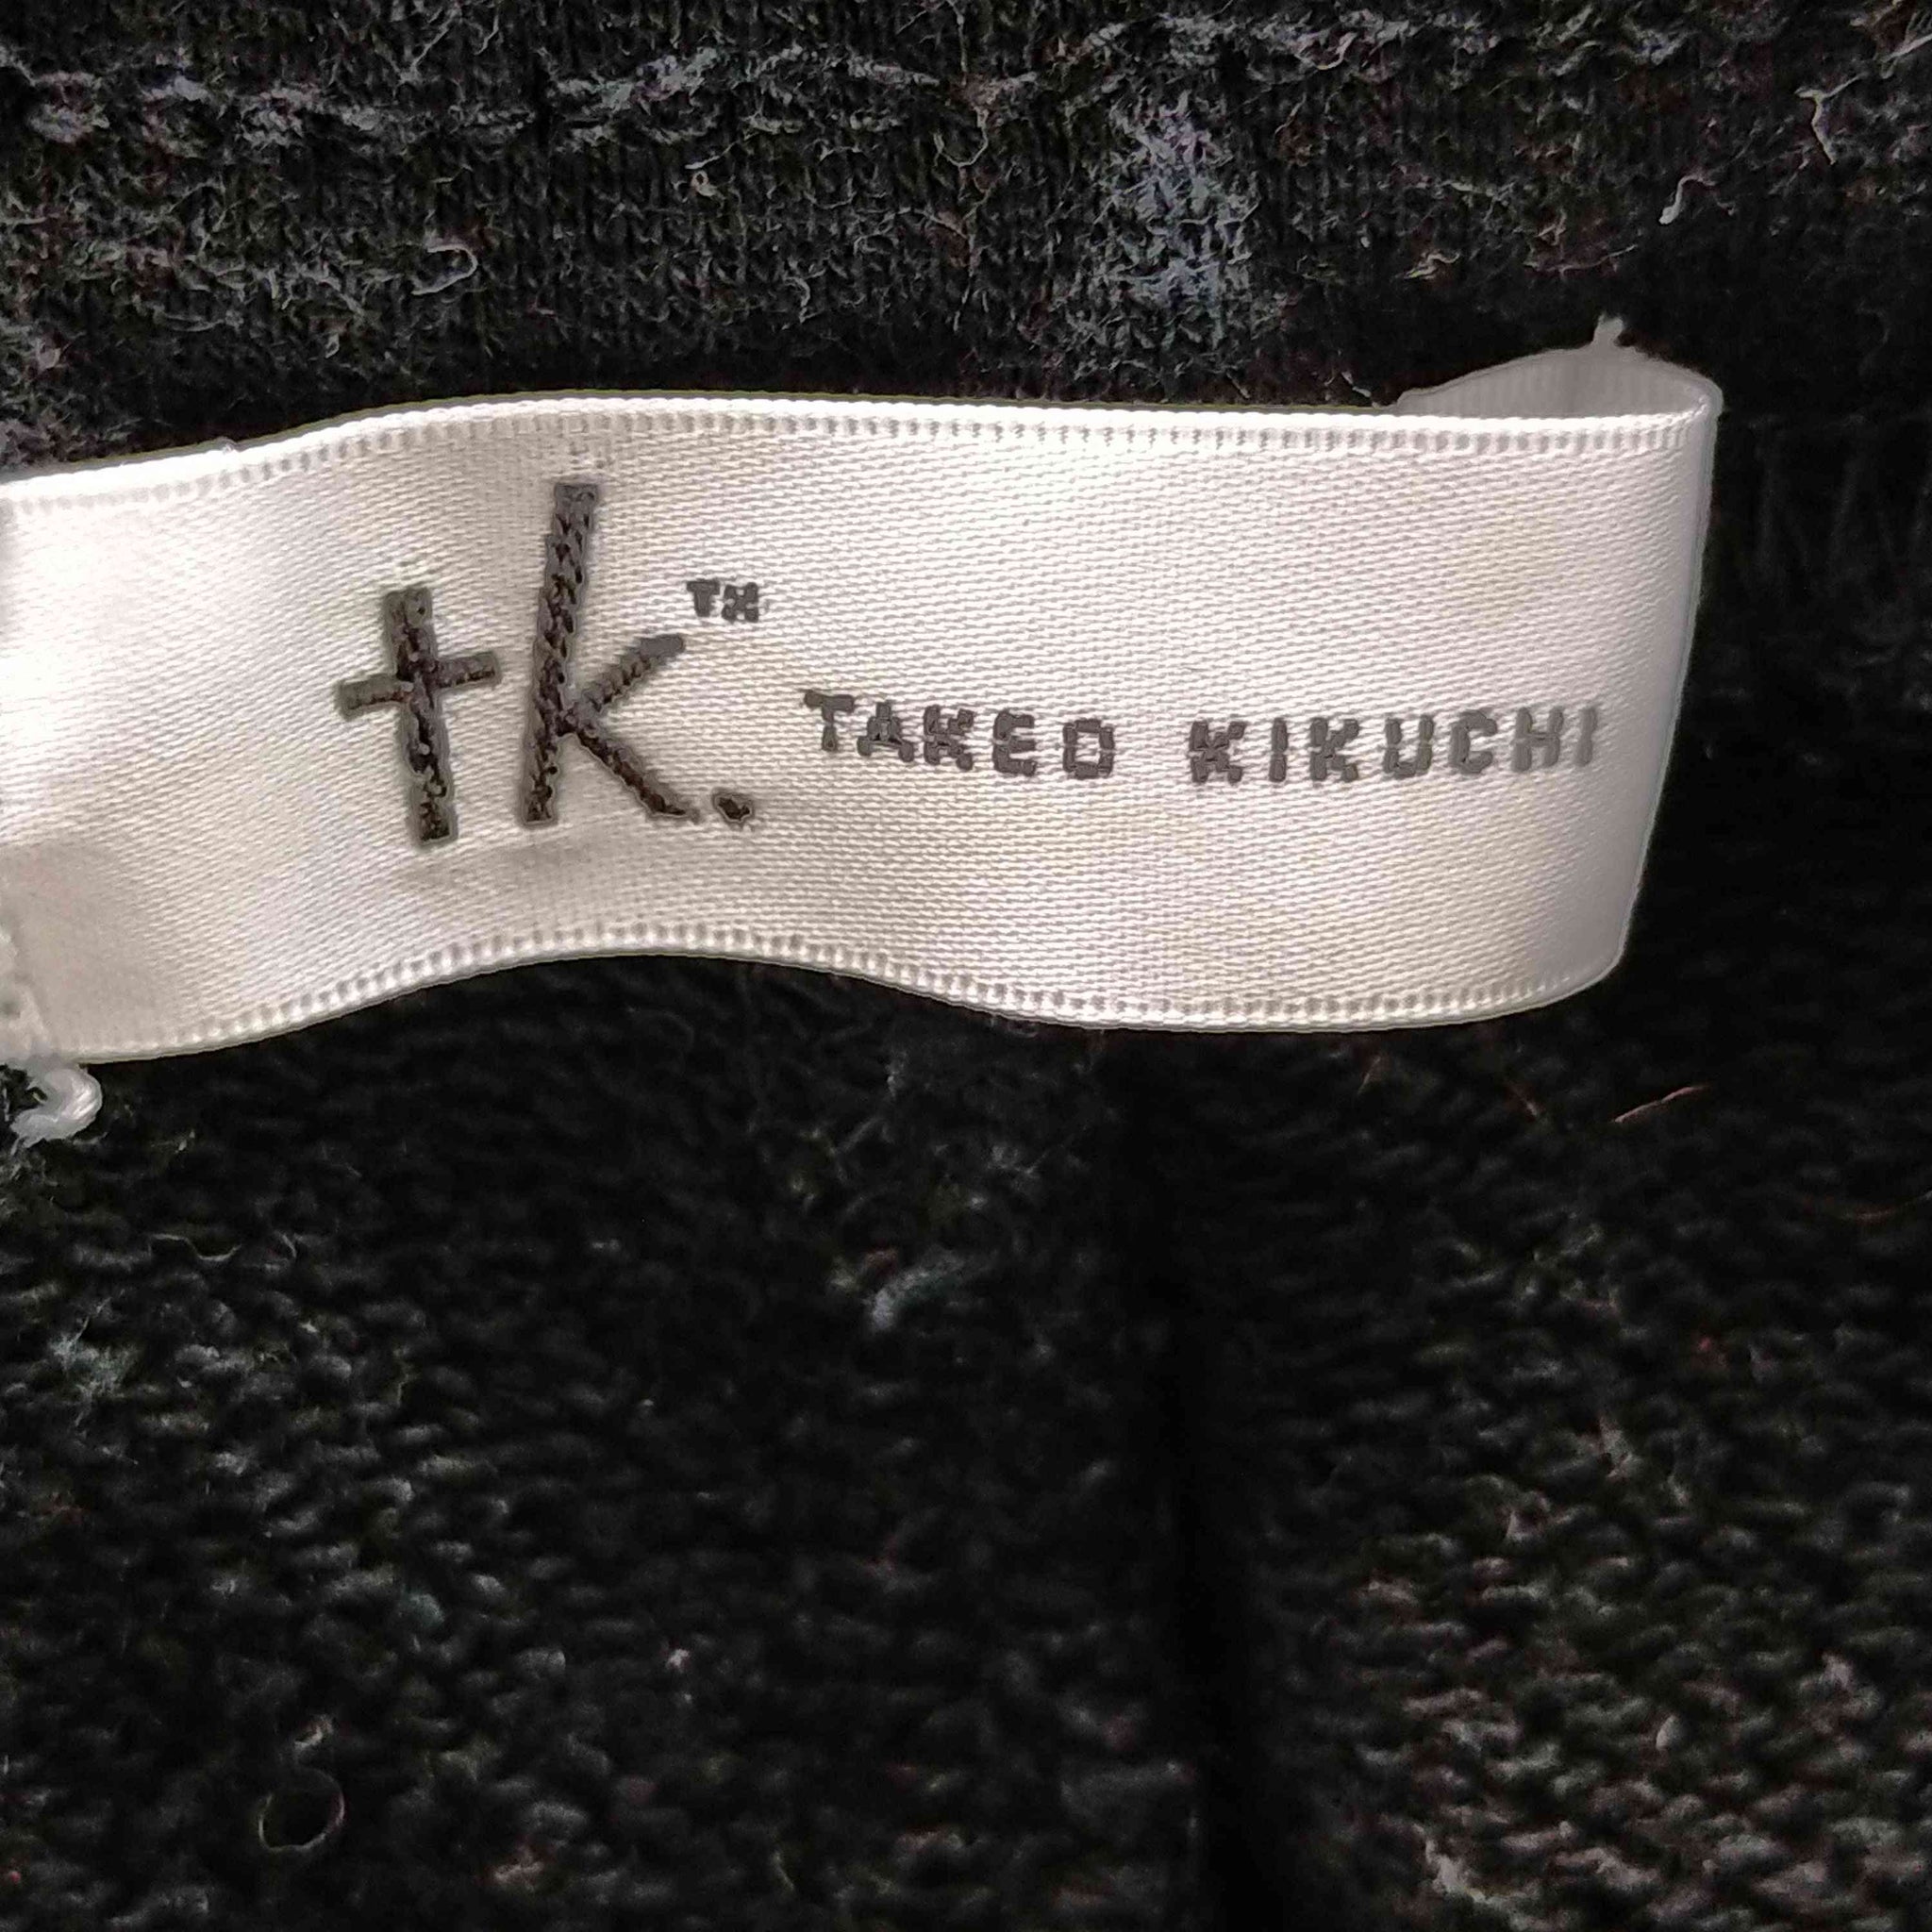 tk. TAKEO KIKUCHI(ティーケー タケオキクチ)スウェットパンツ